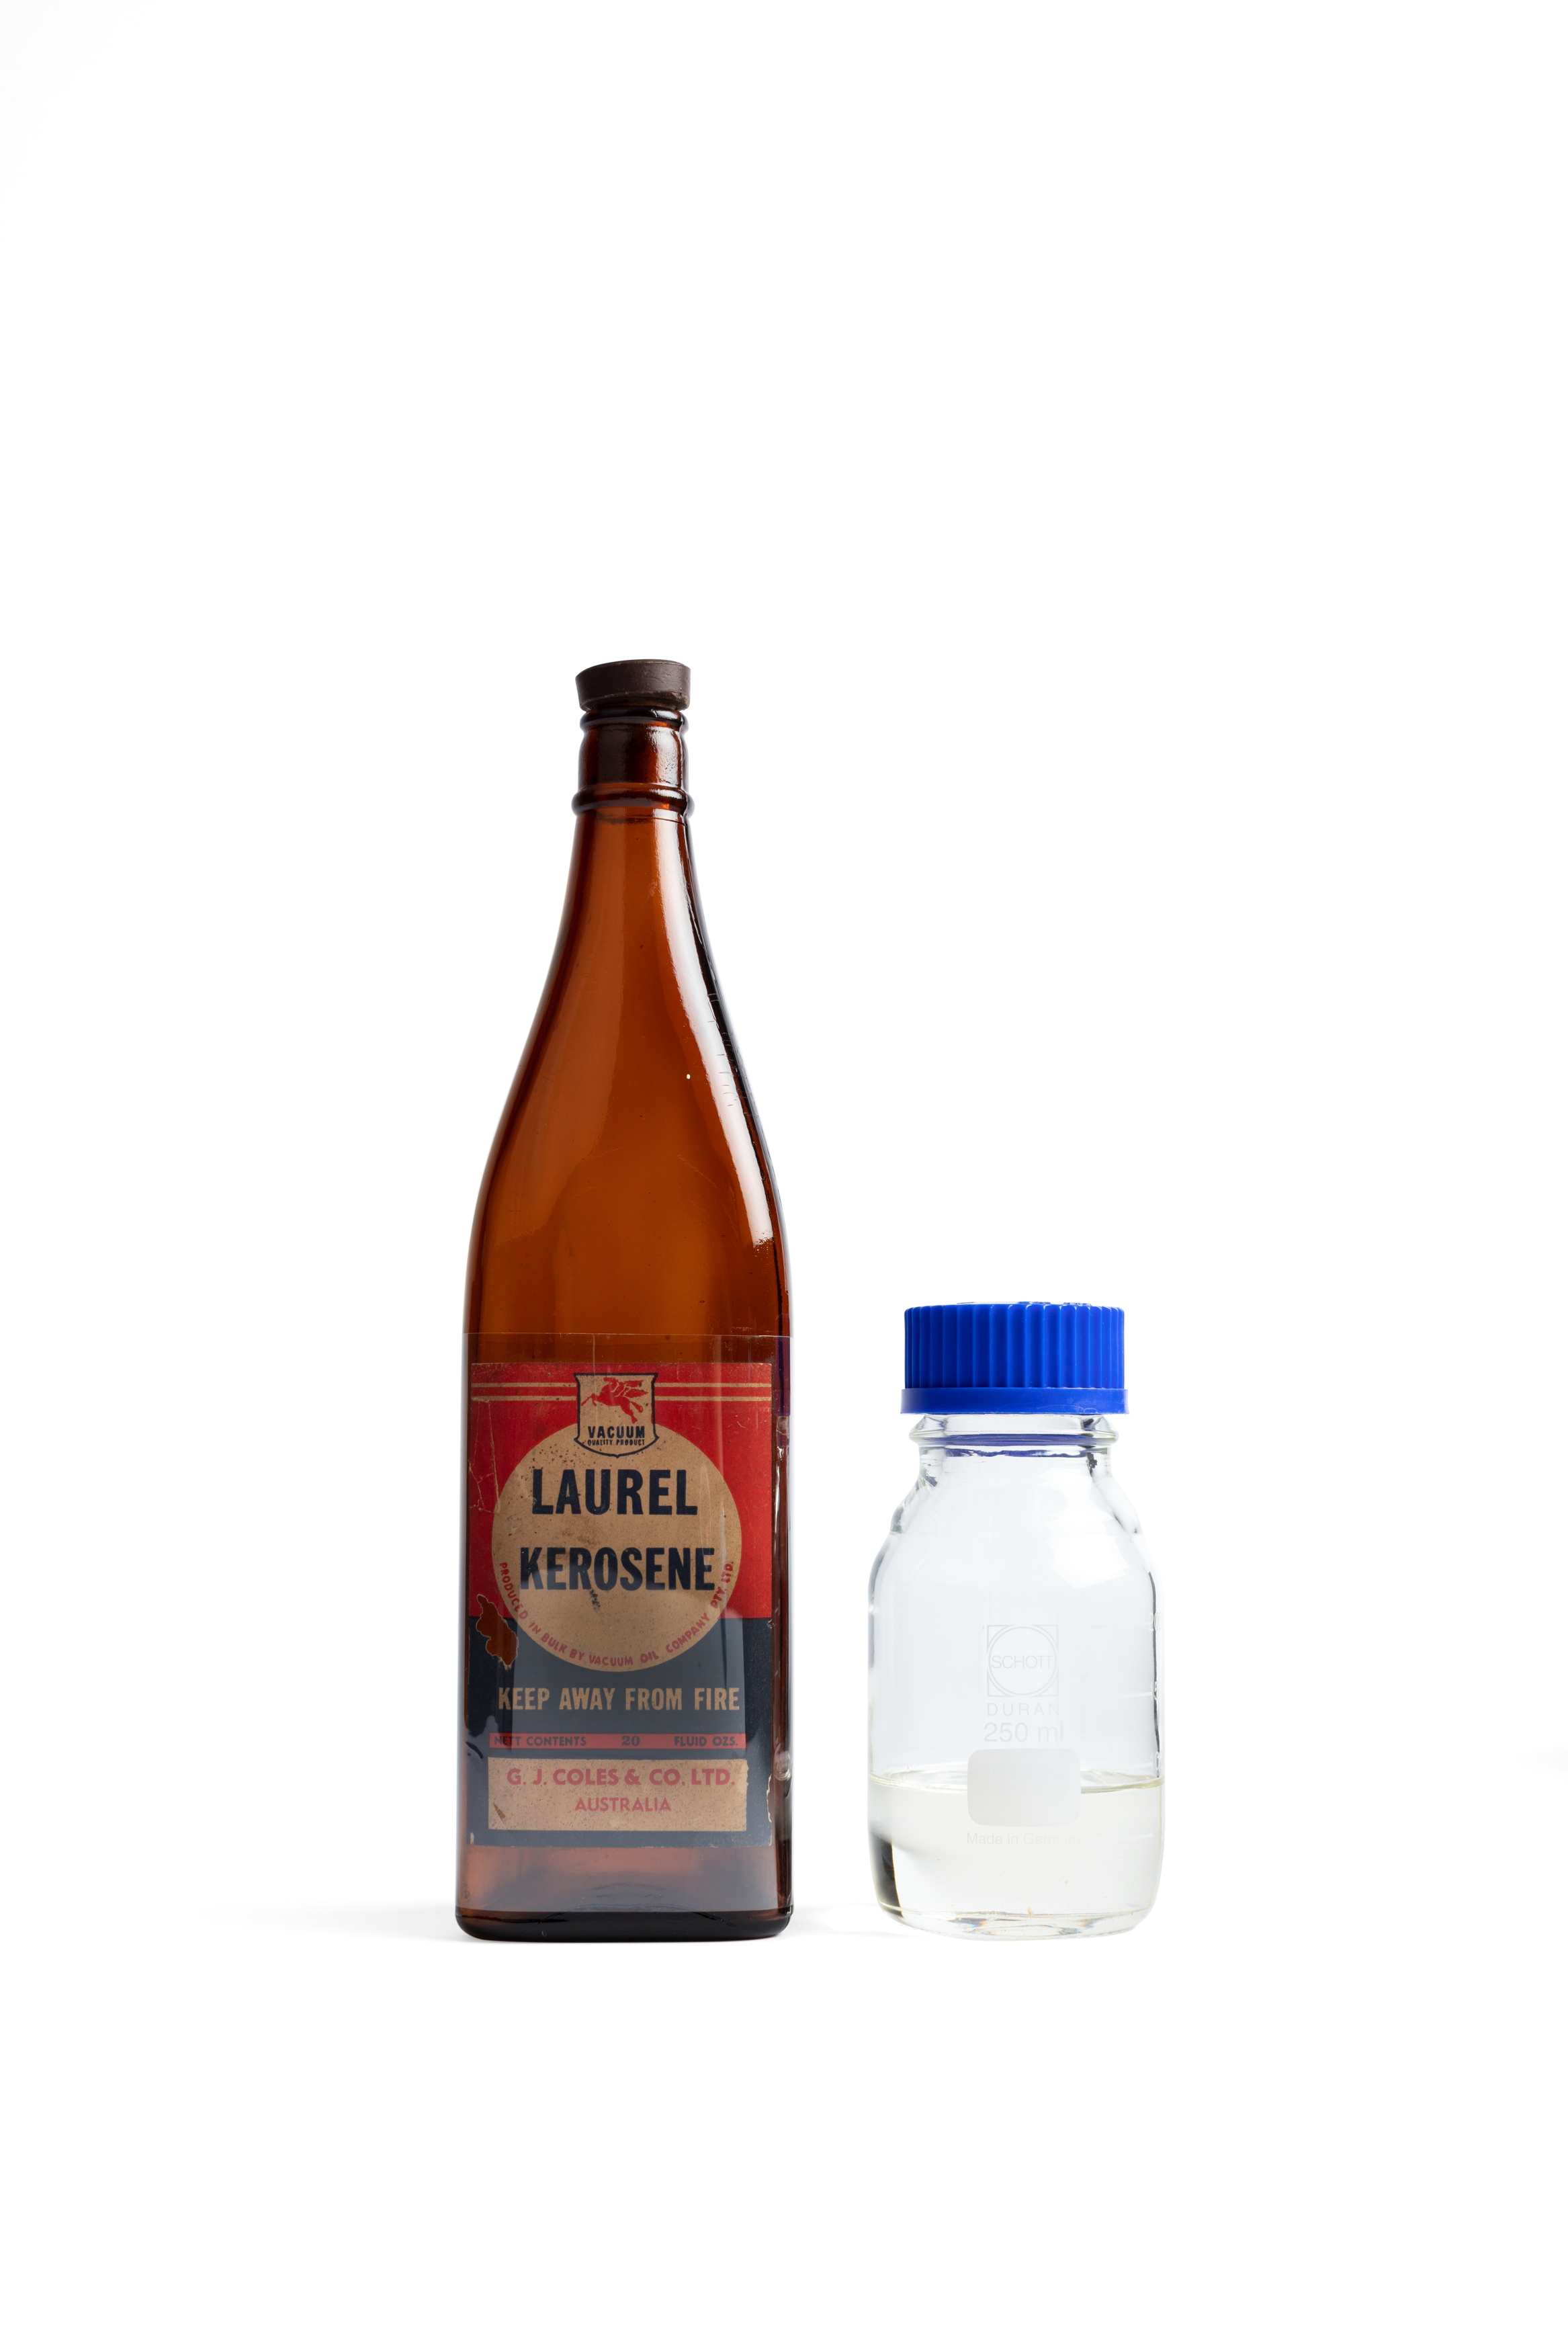 Bottle of Laurel Kerosene